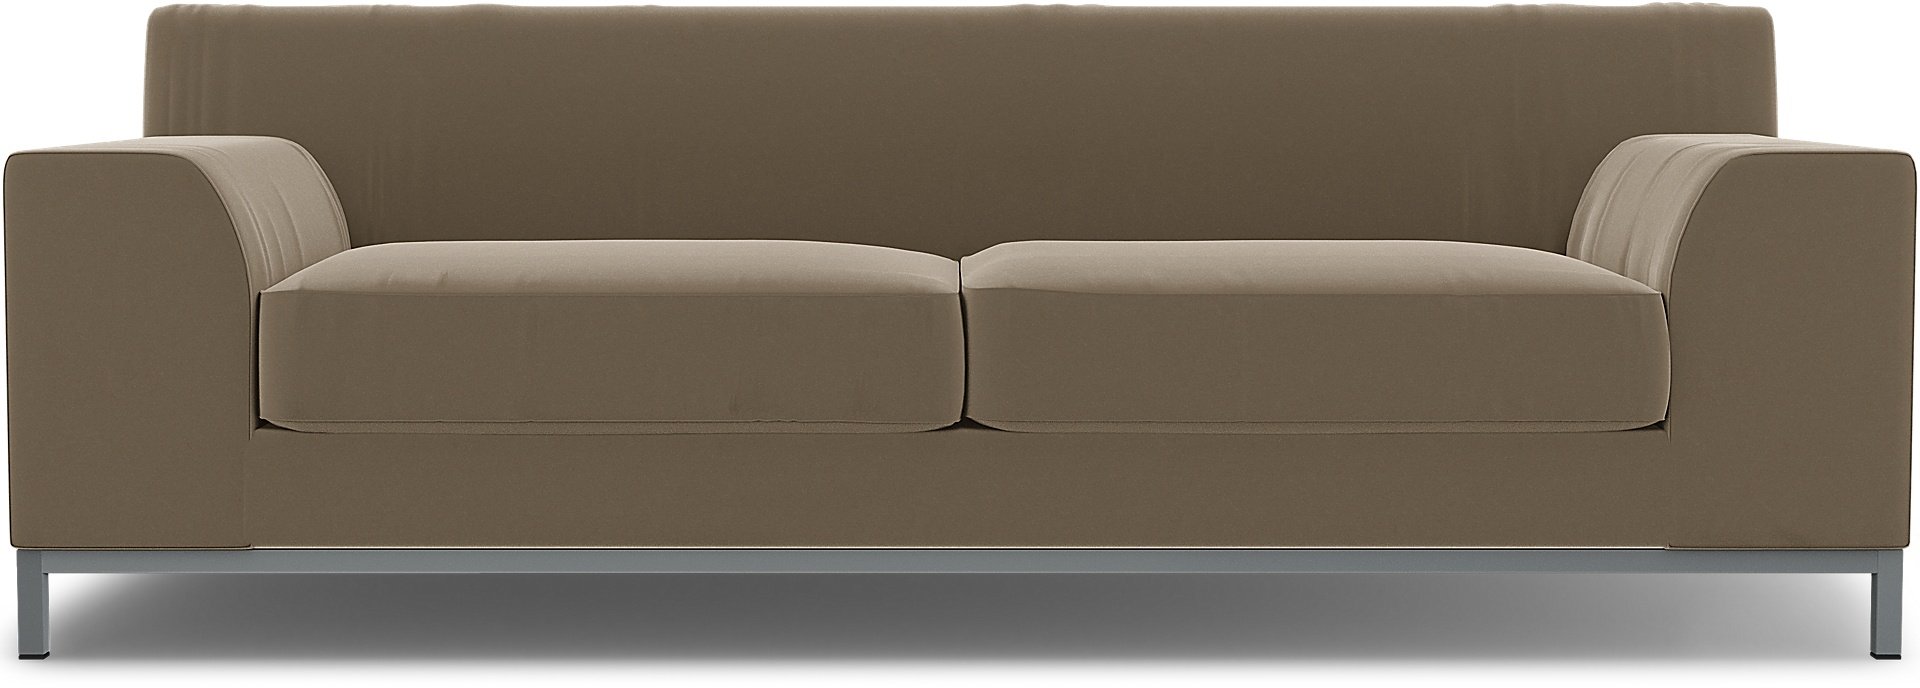 IKEA - Kramfors 3 Seater Sofa Cover, Taupe, Velvet - Bemz